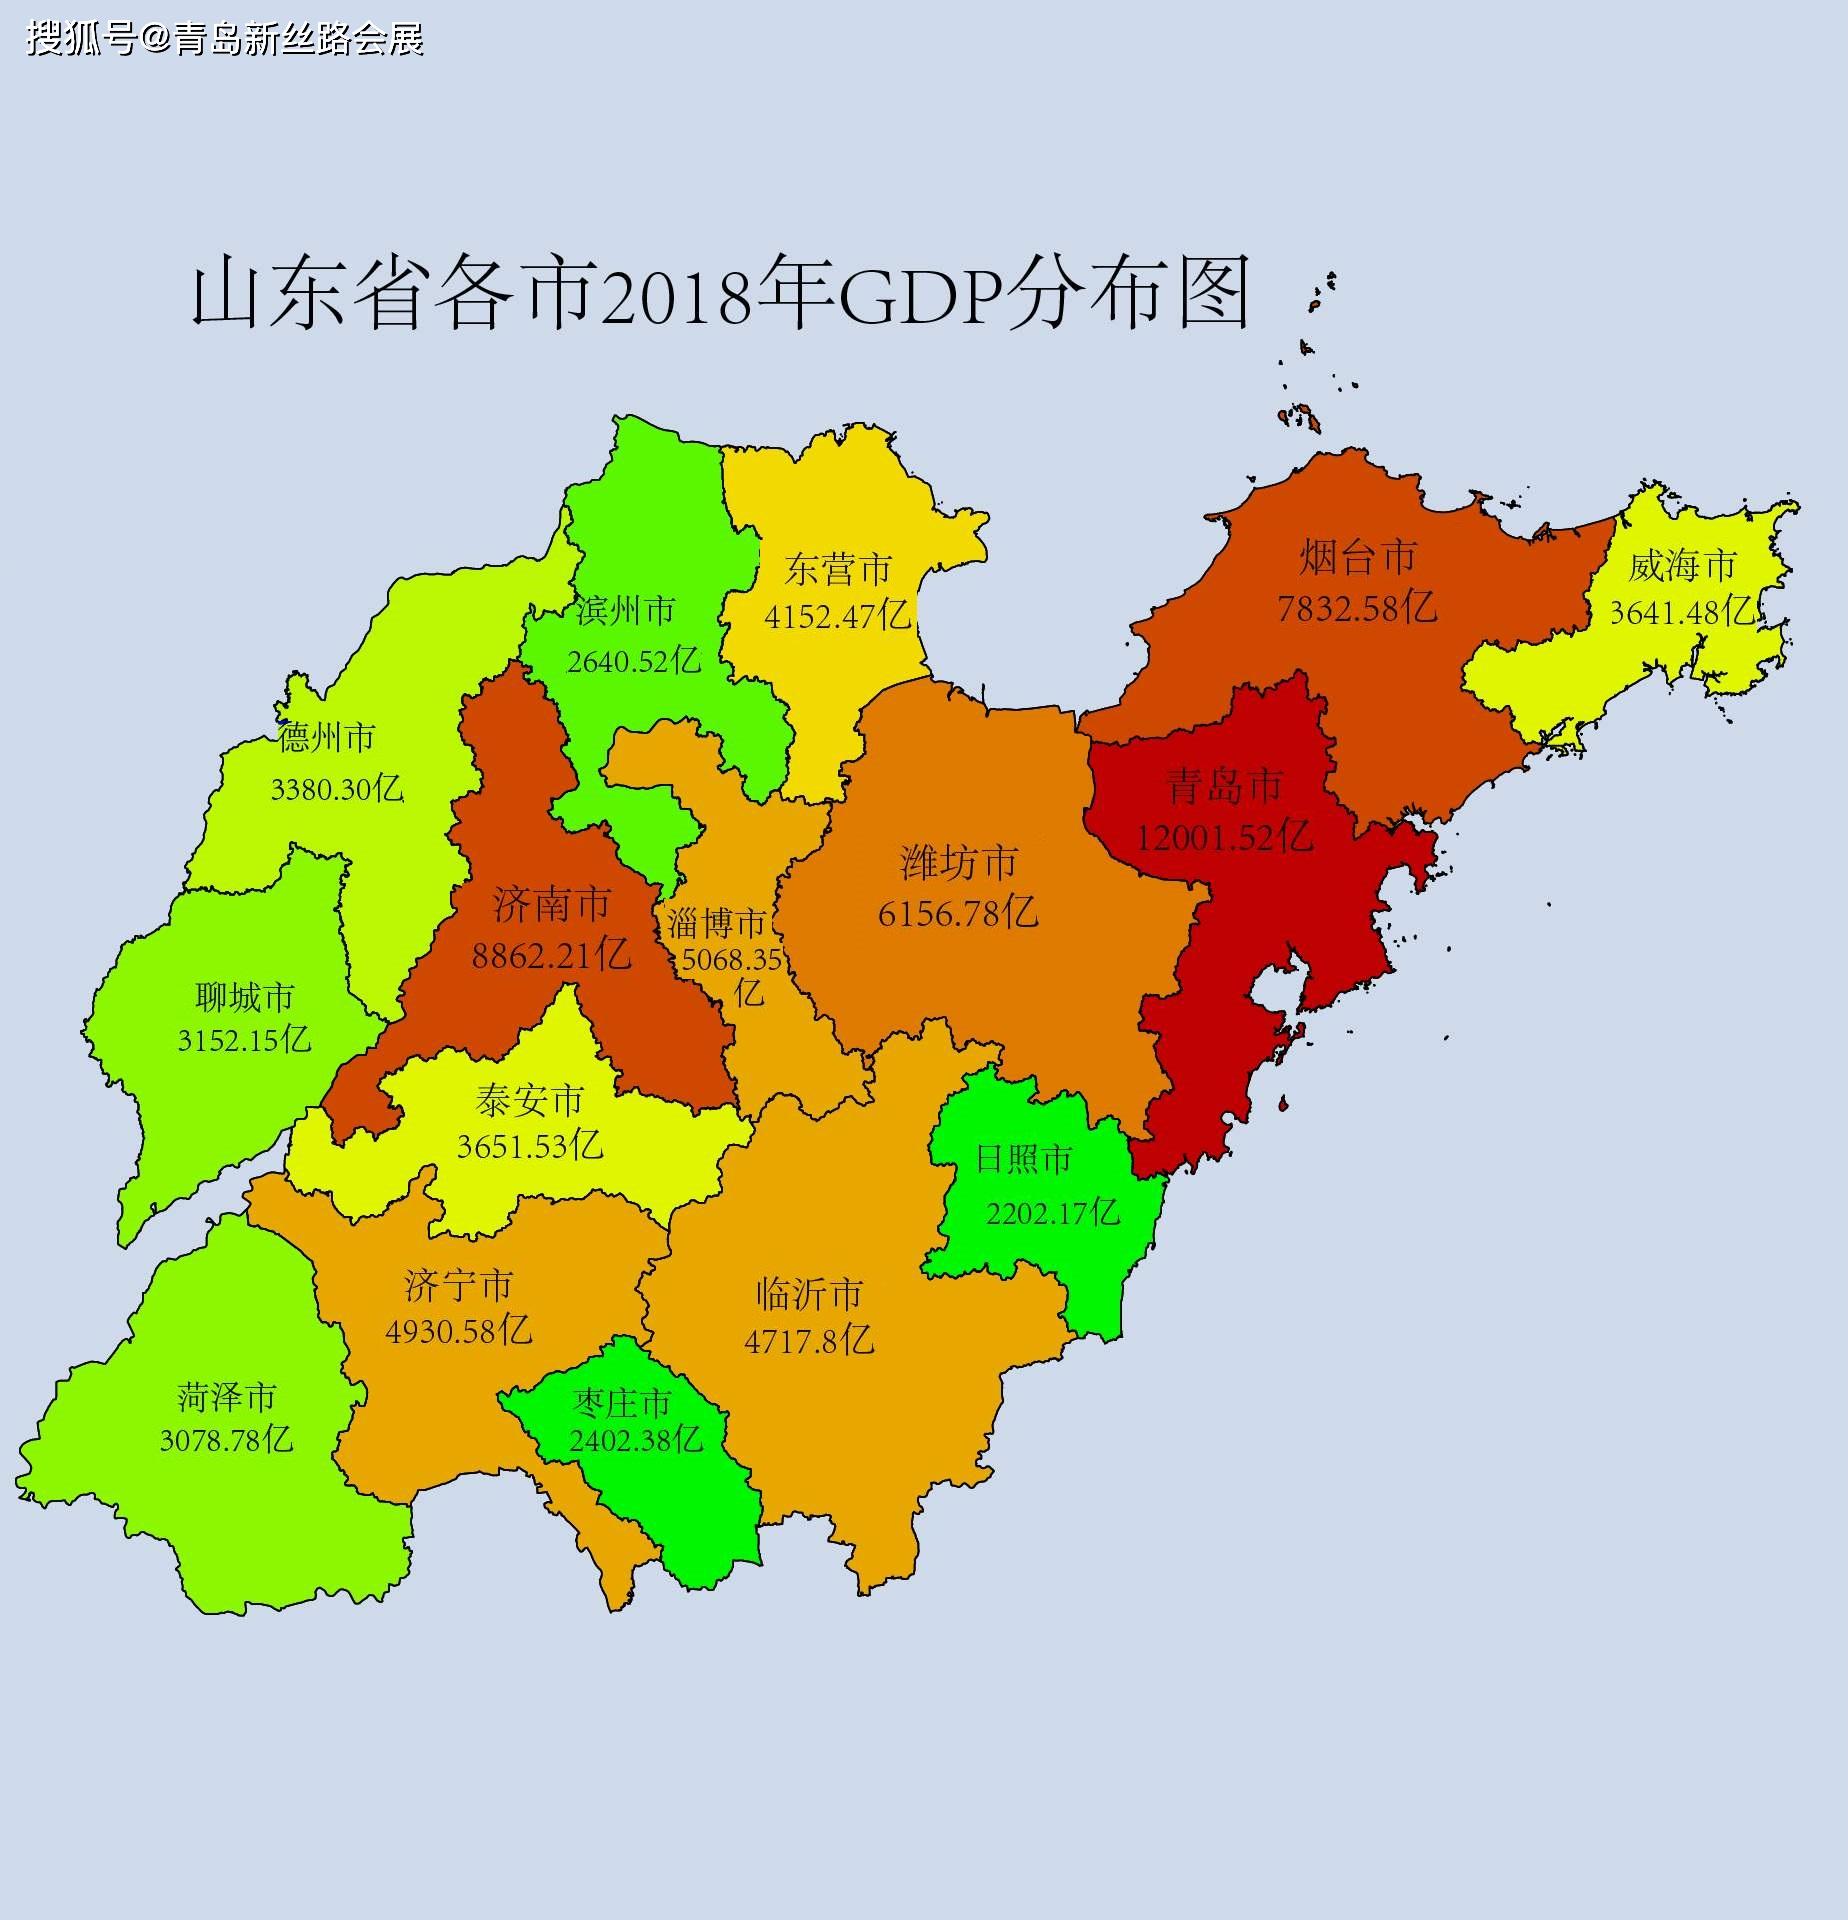 潍坊市各区划分地图图片